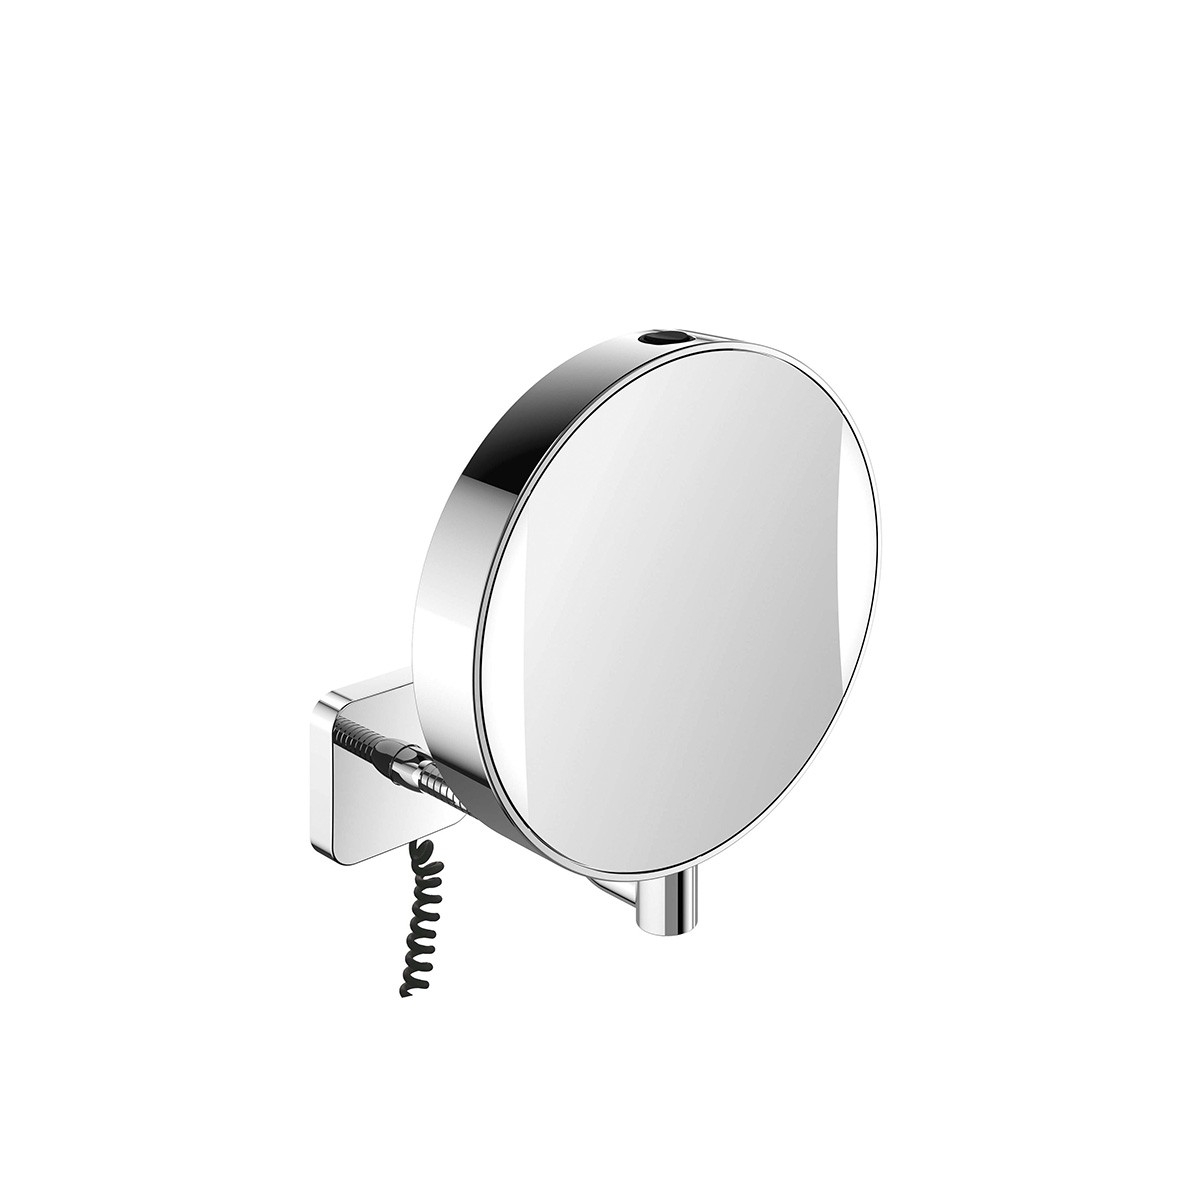 Spiegel 1095.001.10 magnifying mirror